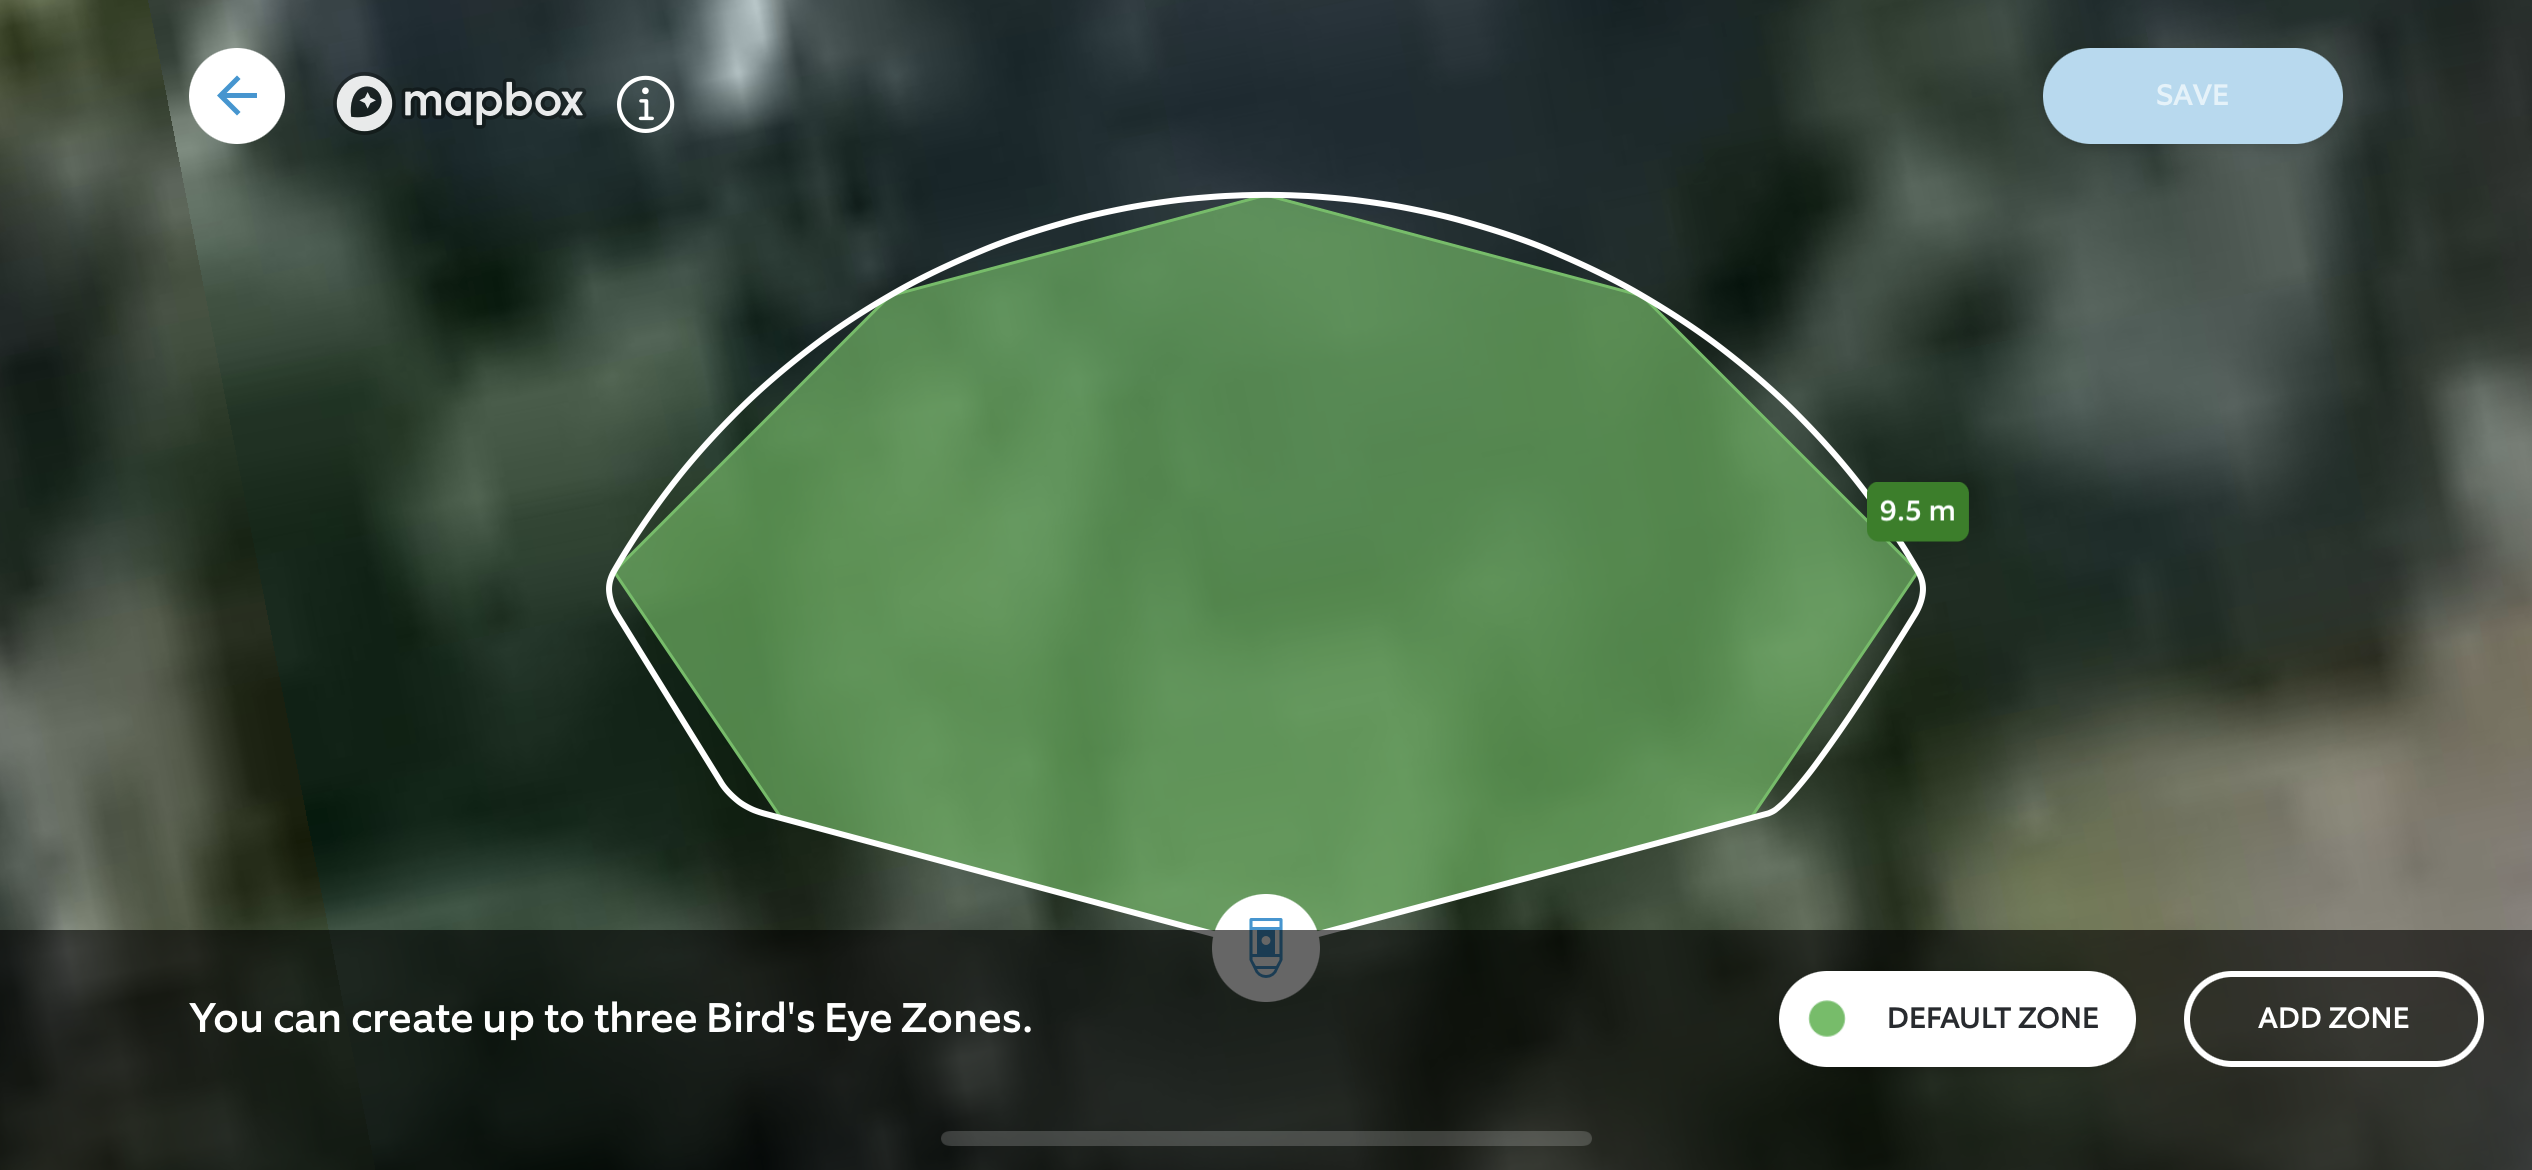 Création de zones à vol d'oiseau avec la Ring Spotlight Cam Pro